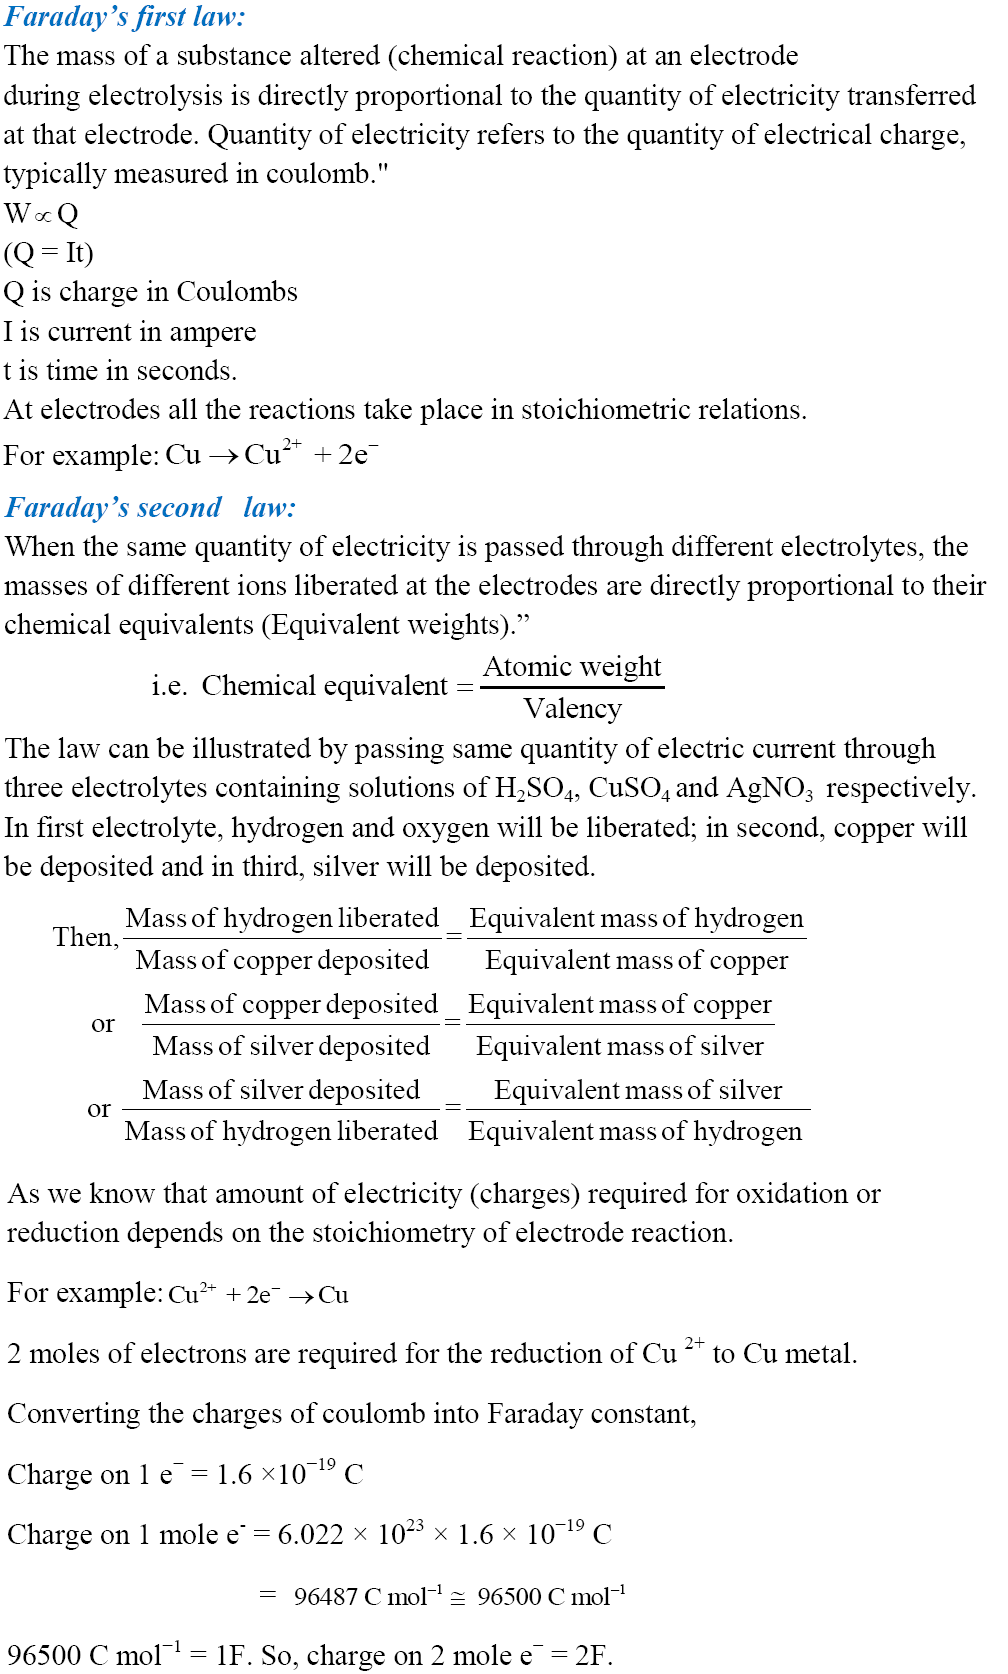 case study electrochemistry class 12